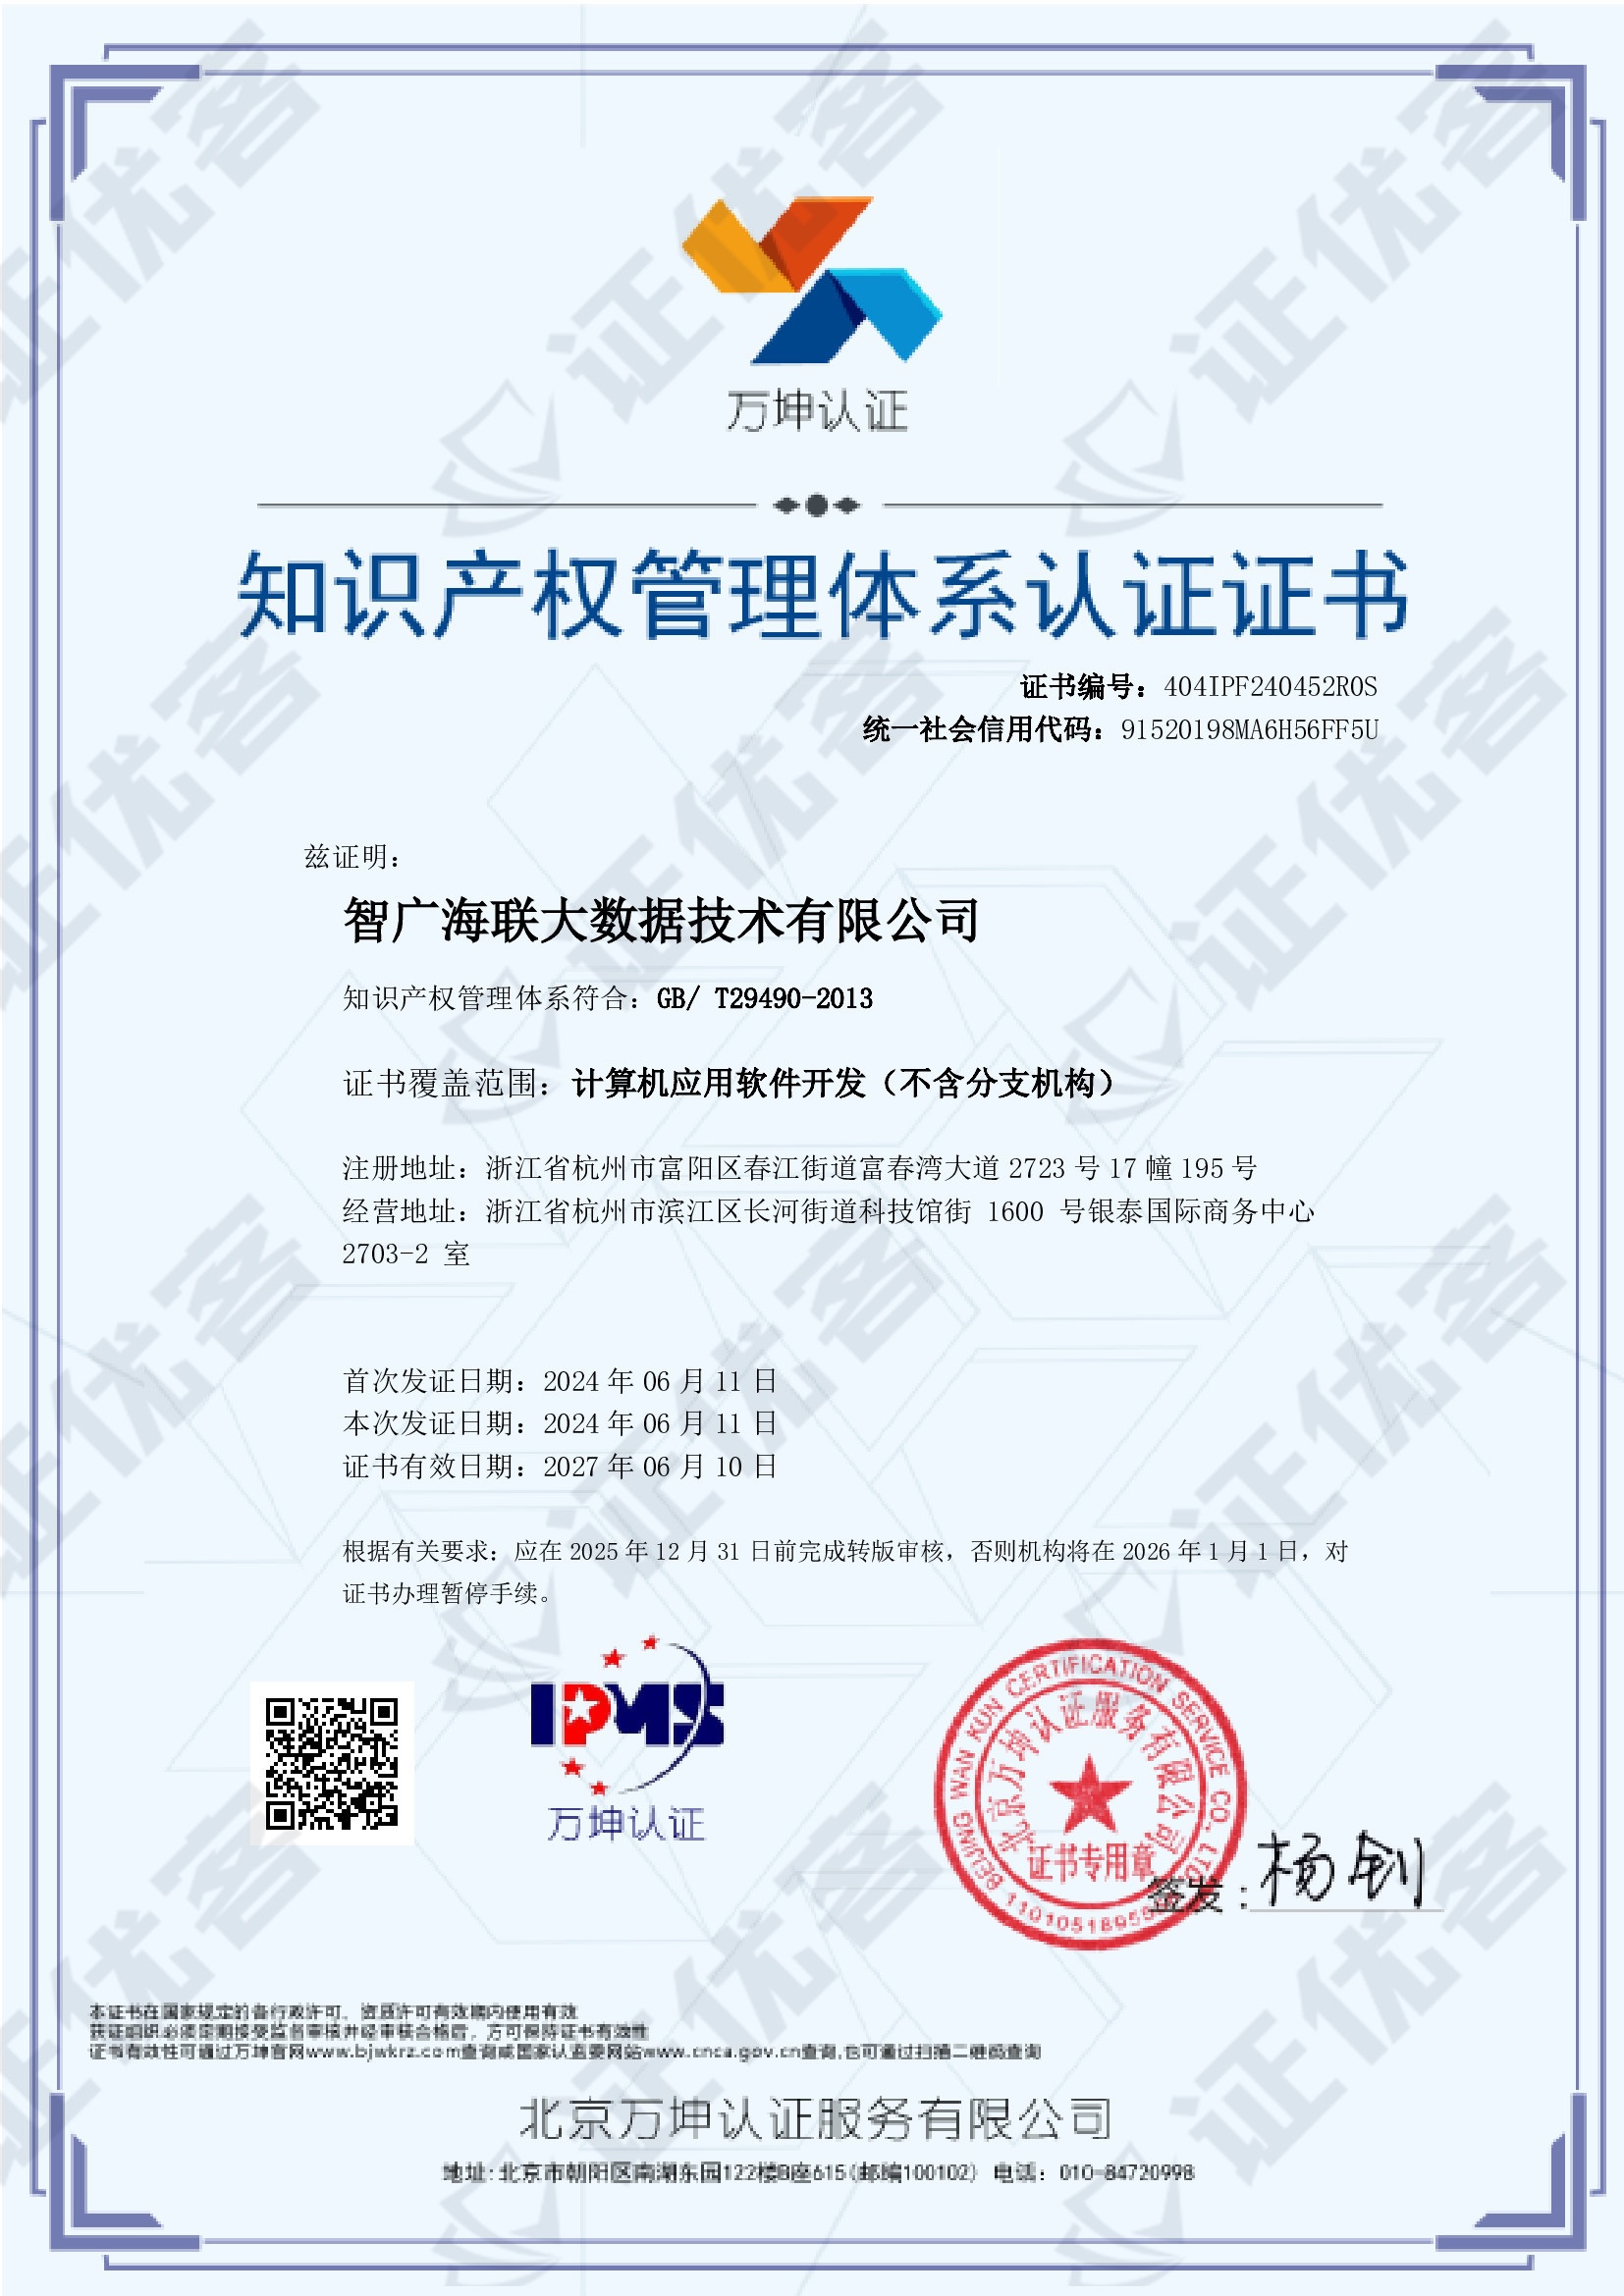 智广海联取得《知识产权管理体系认证》证书